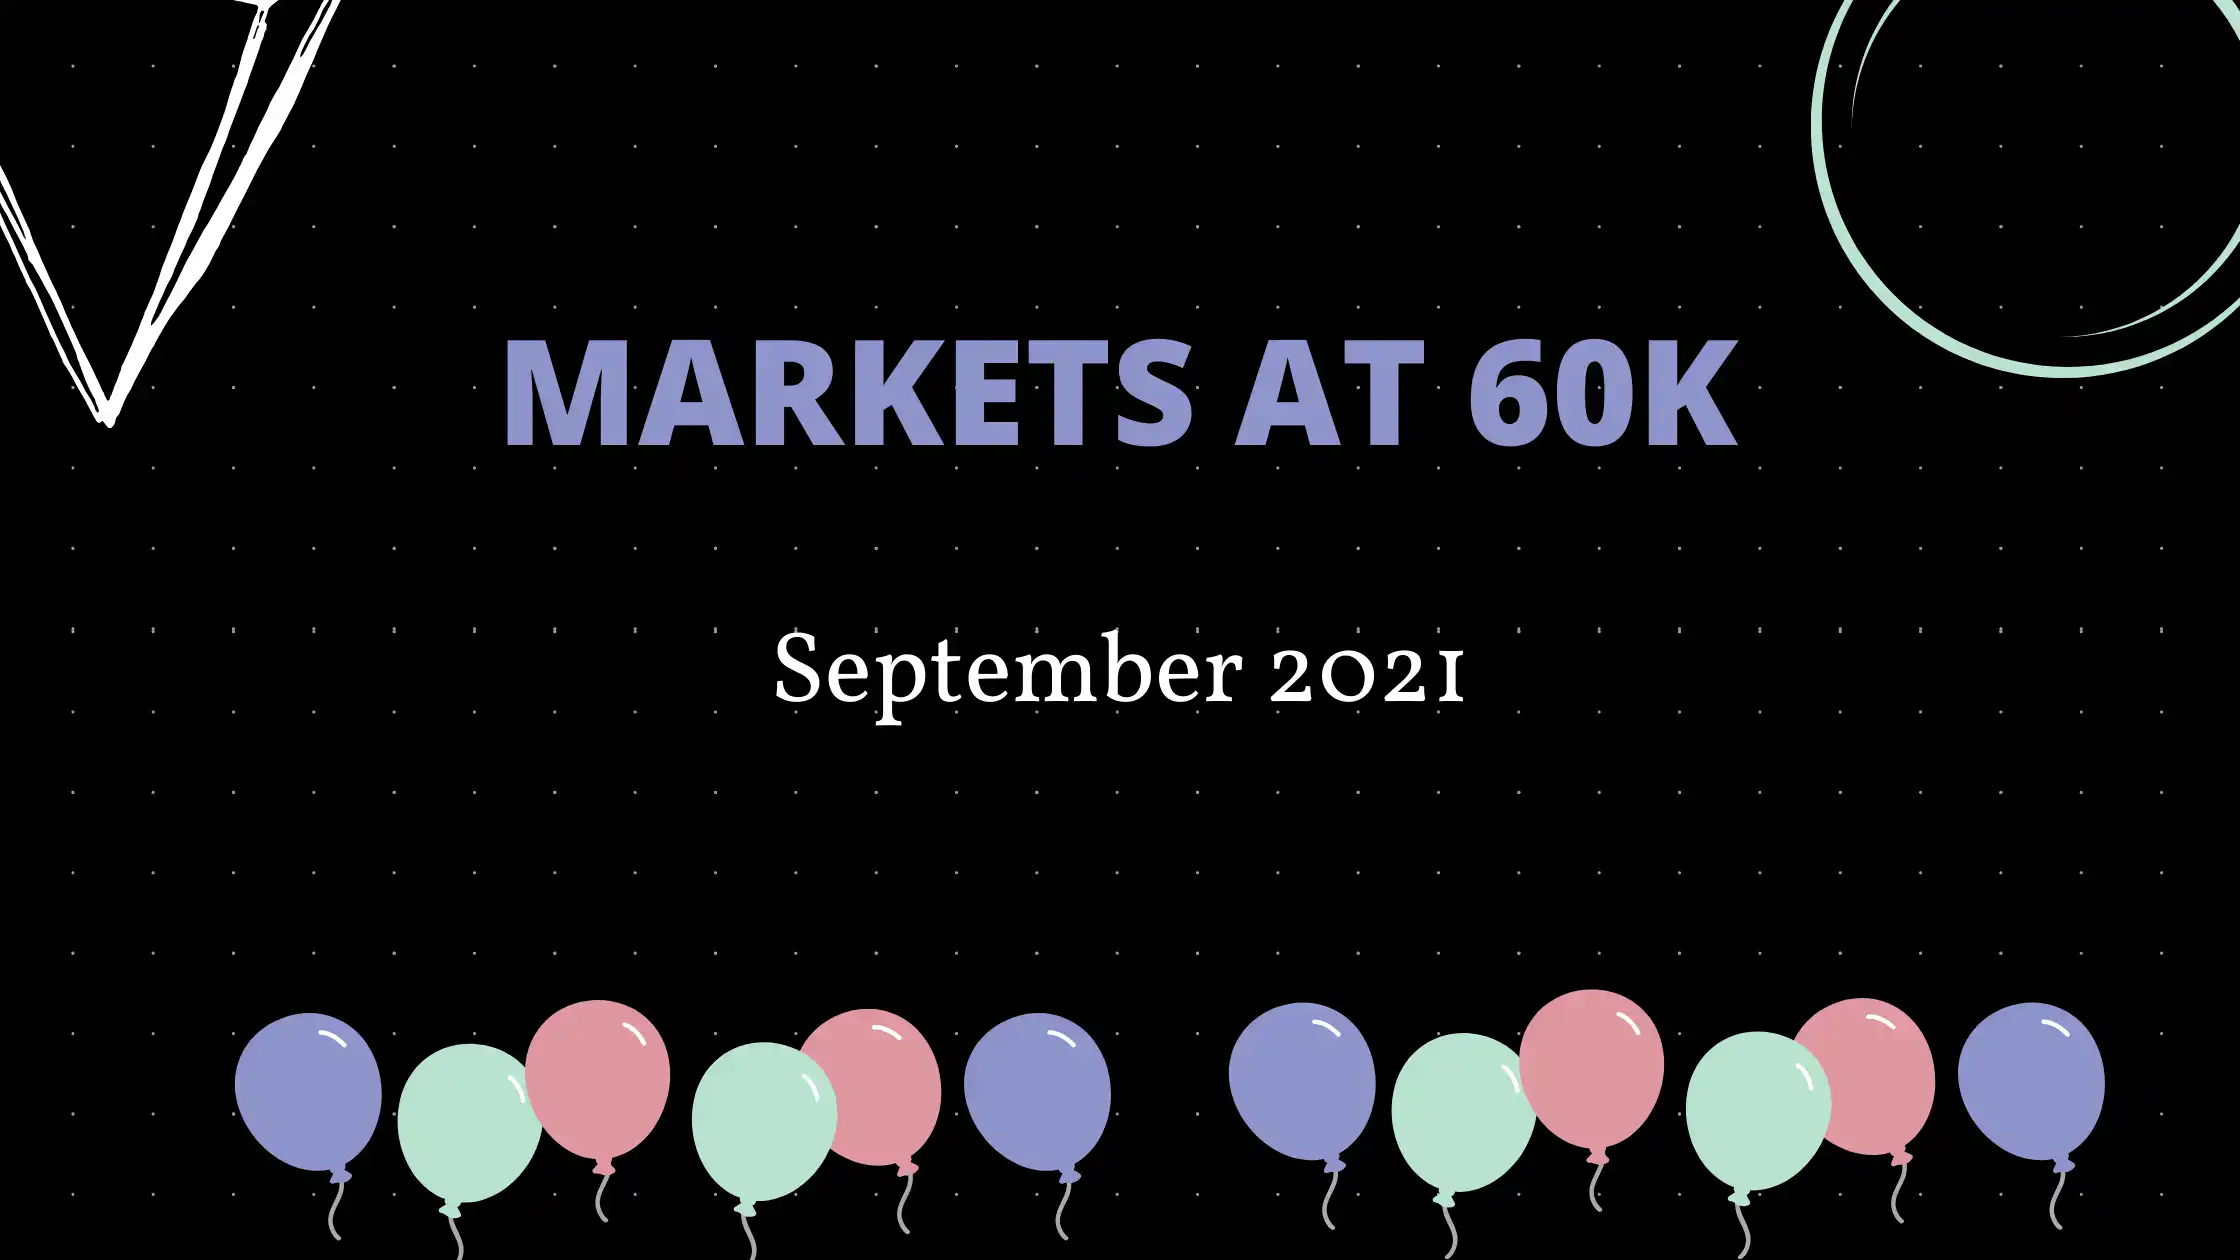 Markets at 60k!